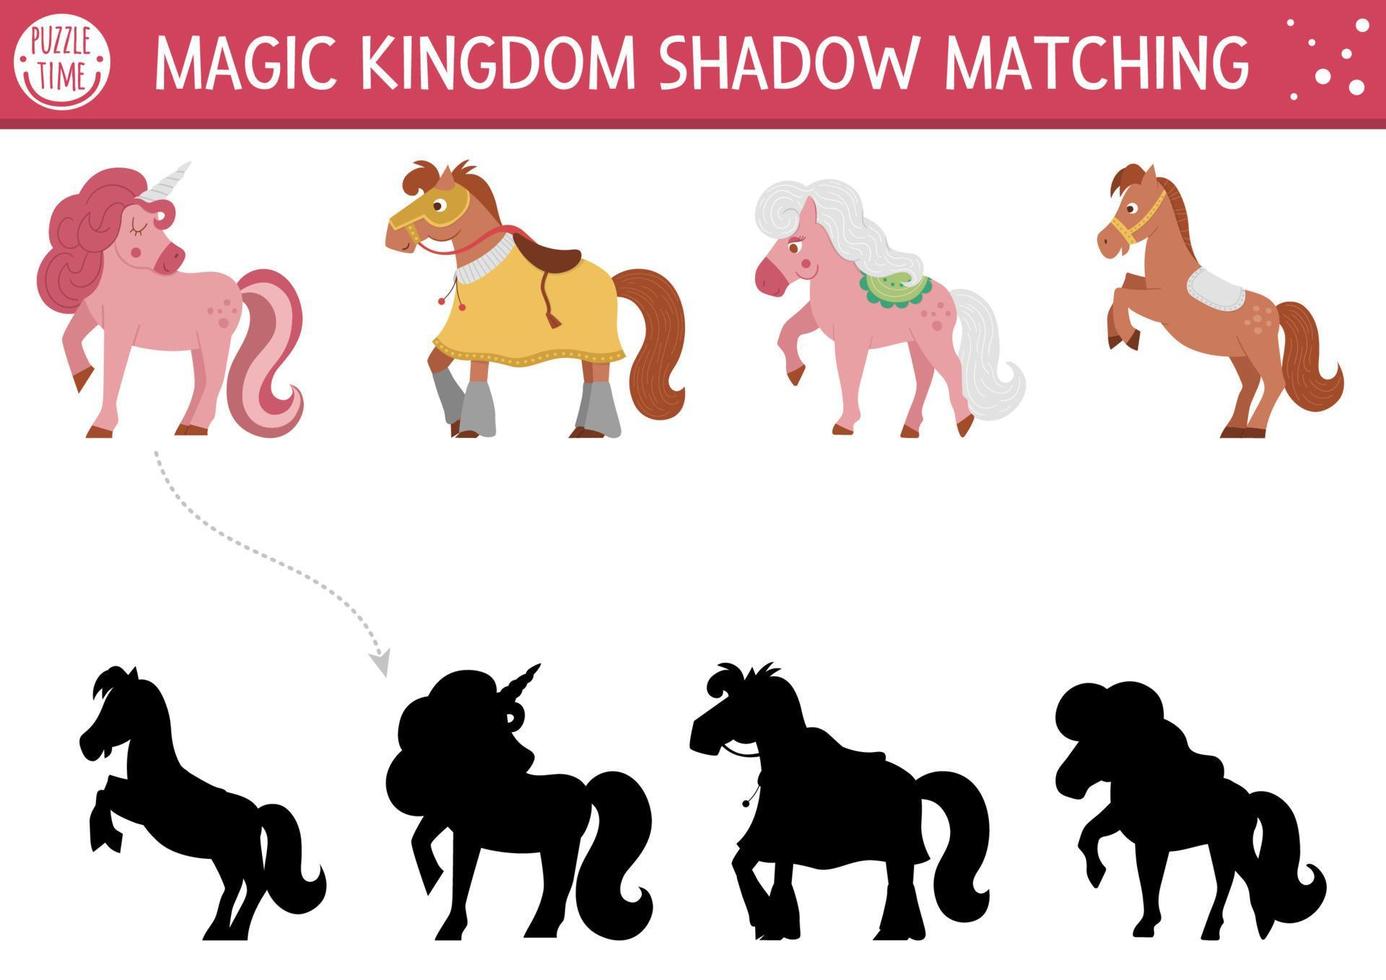 Märchenhafte Schatten-Matching-Aktivität mit Pferden und Einhorn. magisches Königreich Puzzle mit süßen Charakteren. Finden Sie ein druckbares Arbeitsblatt oder Spiel mit der richtigen Silhouette. Märchenseite für Kinder vektor